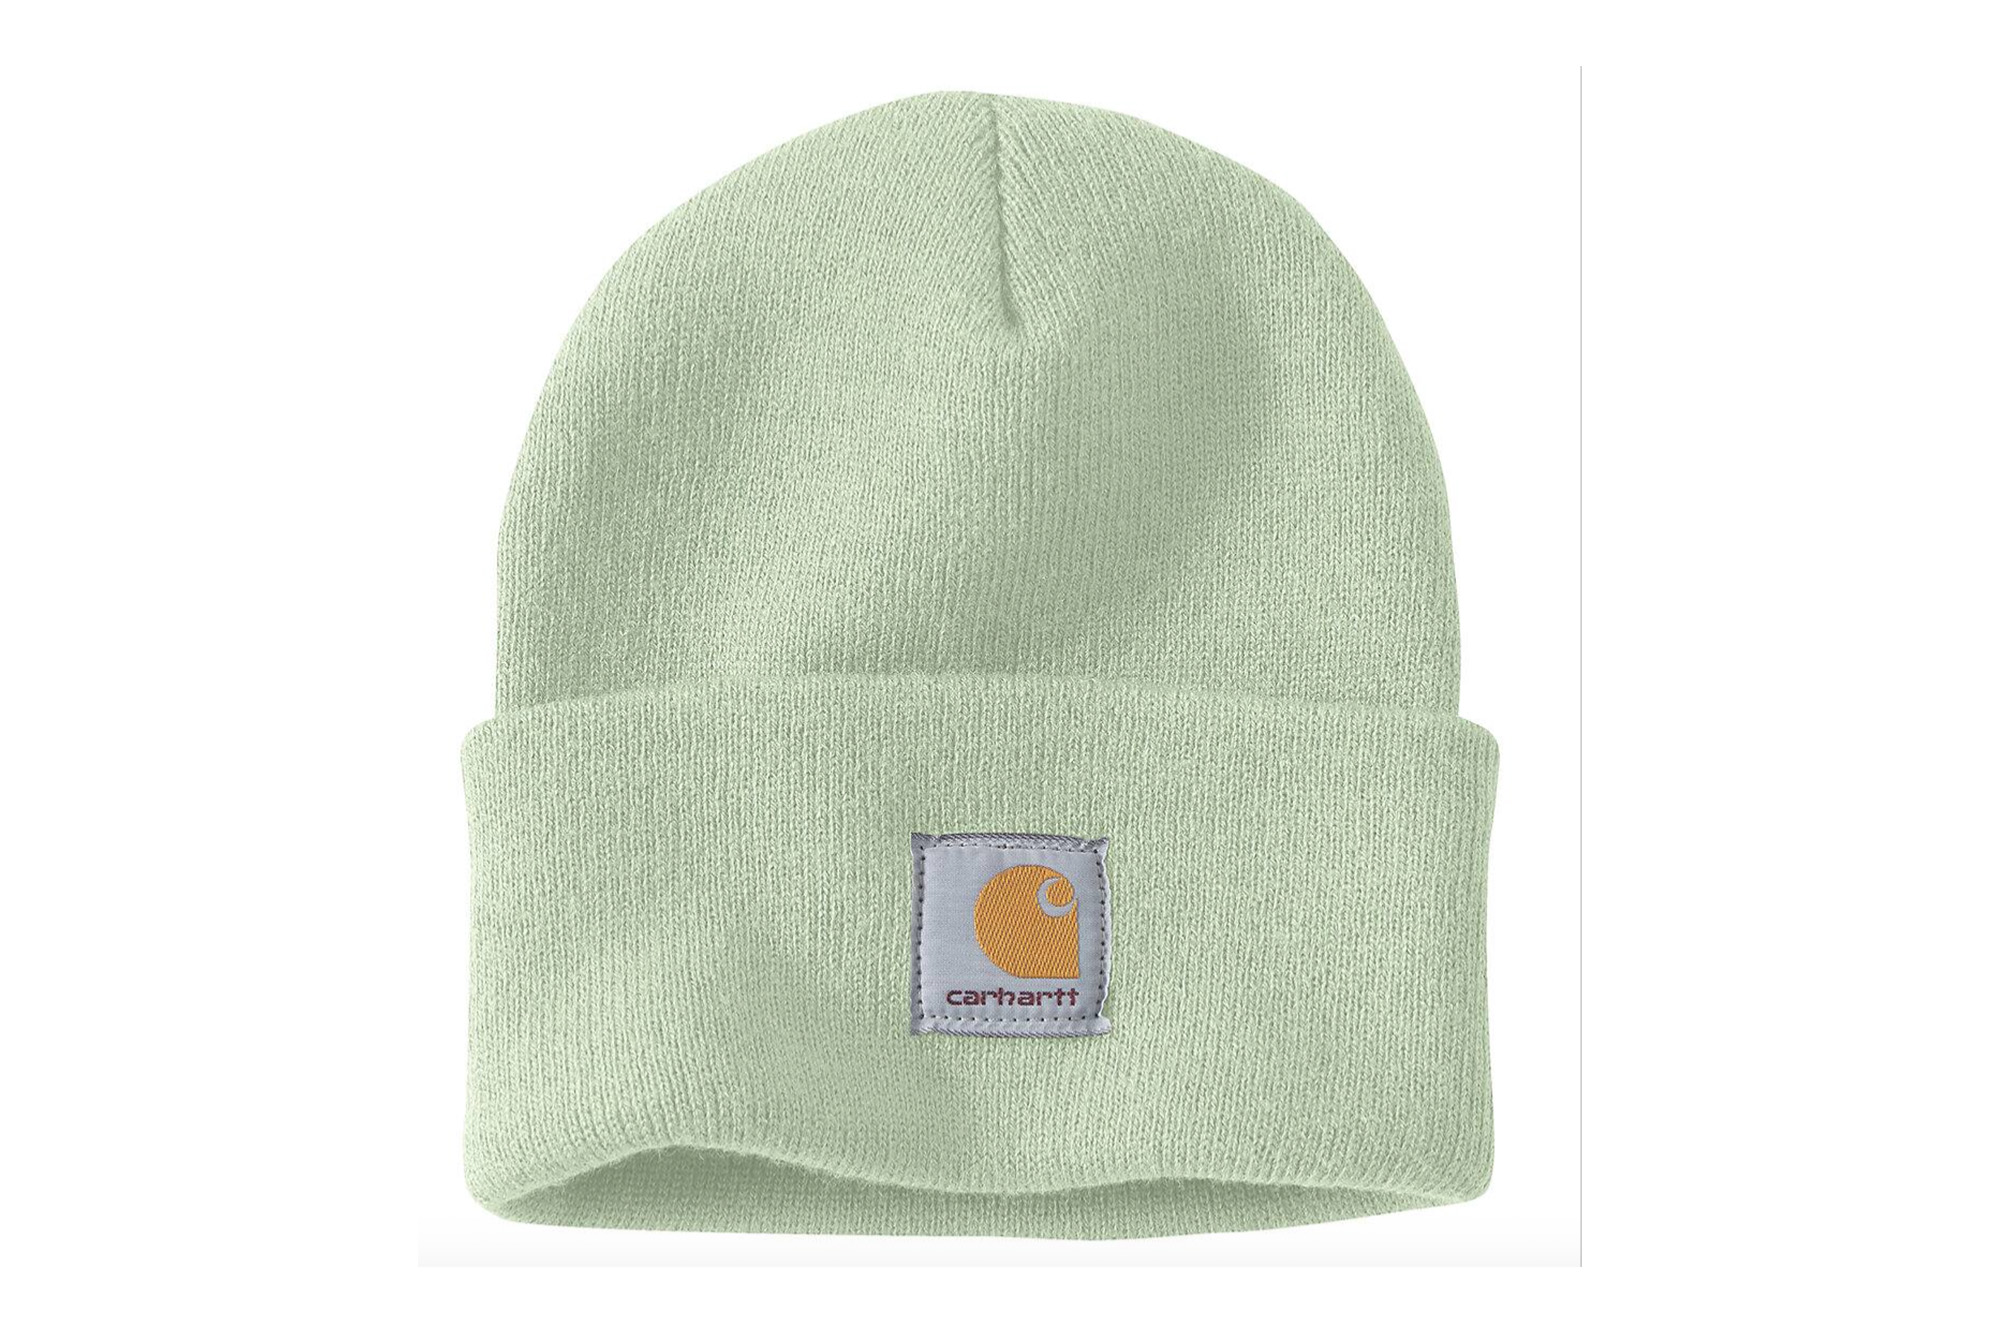 Eine hellgrüne Carhartt-Mütze